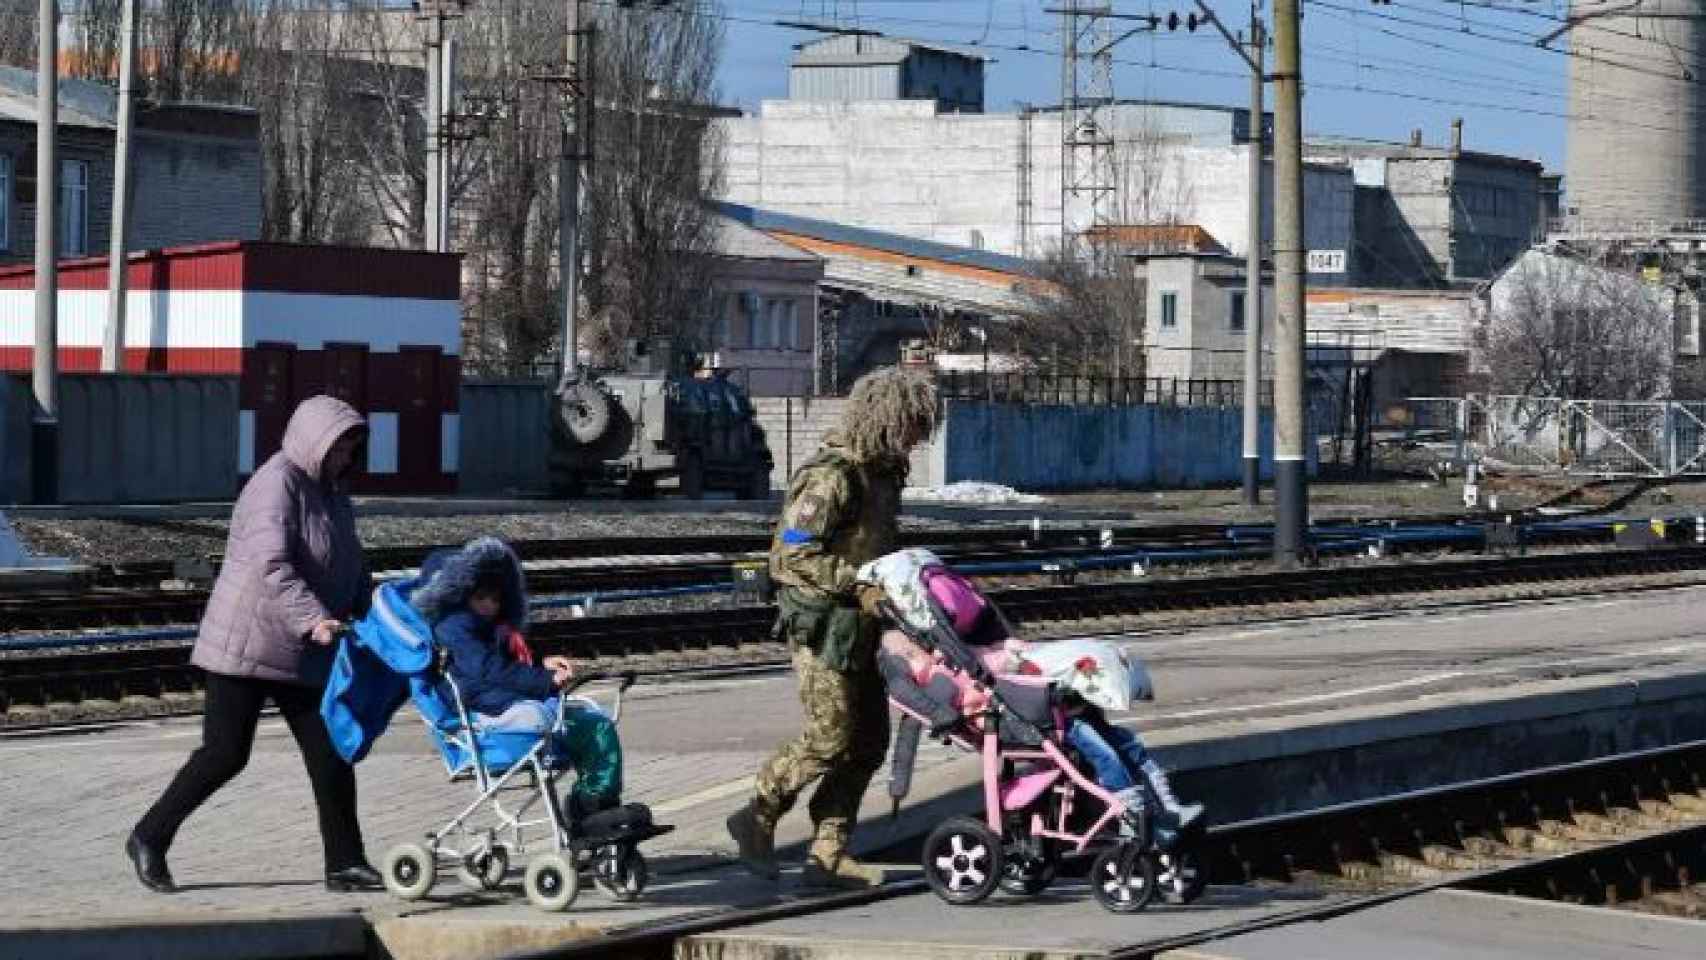 Una mujer y un militar son vistos ayudando a varios niños a subirse a un tren.